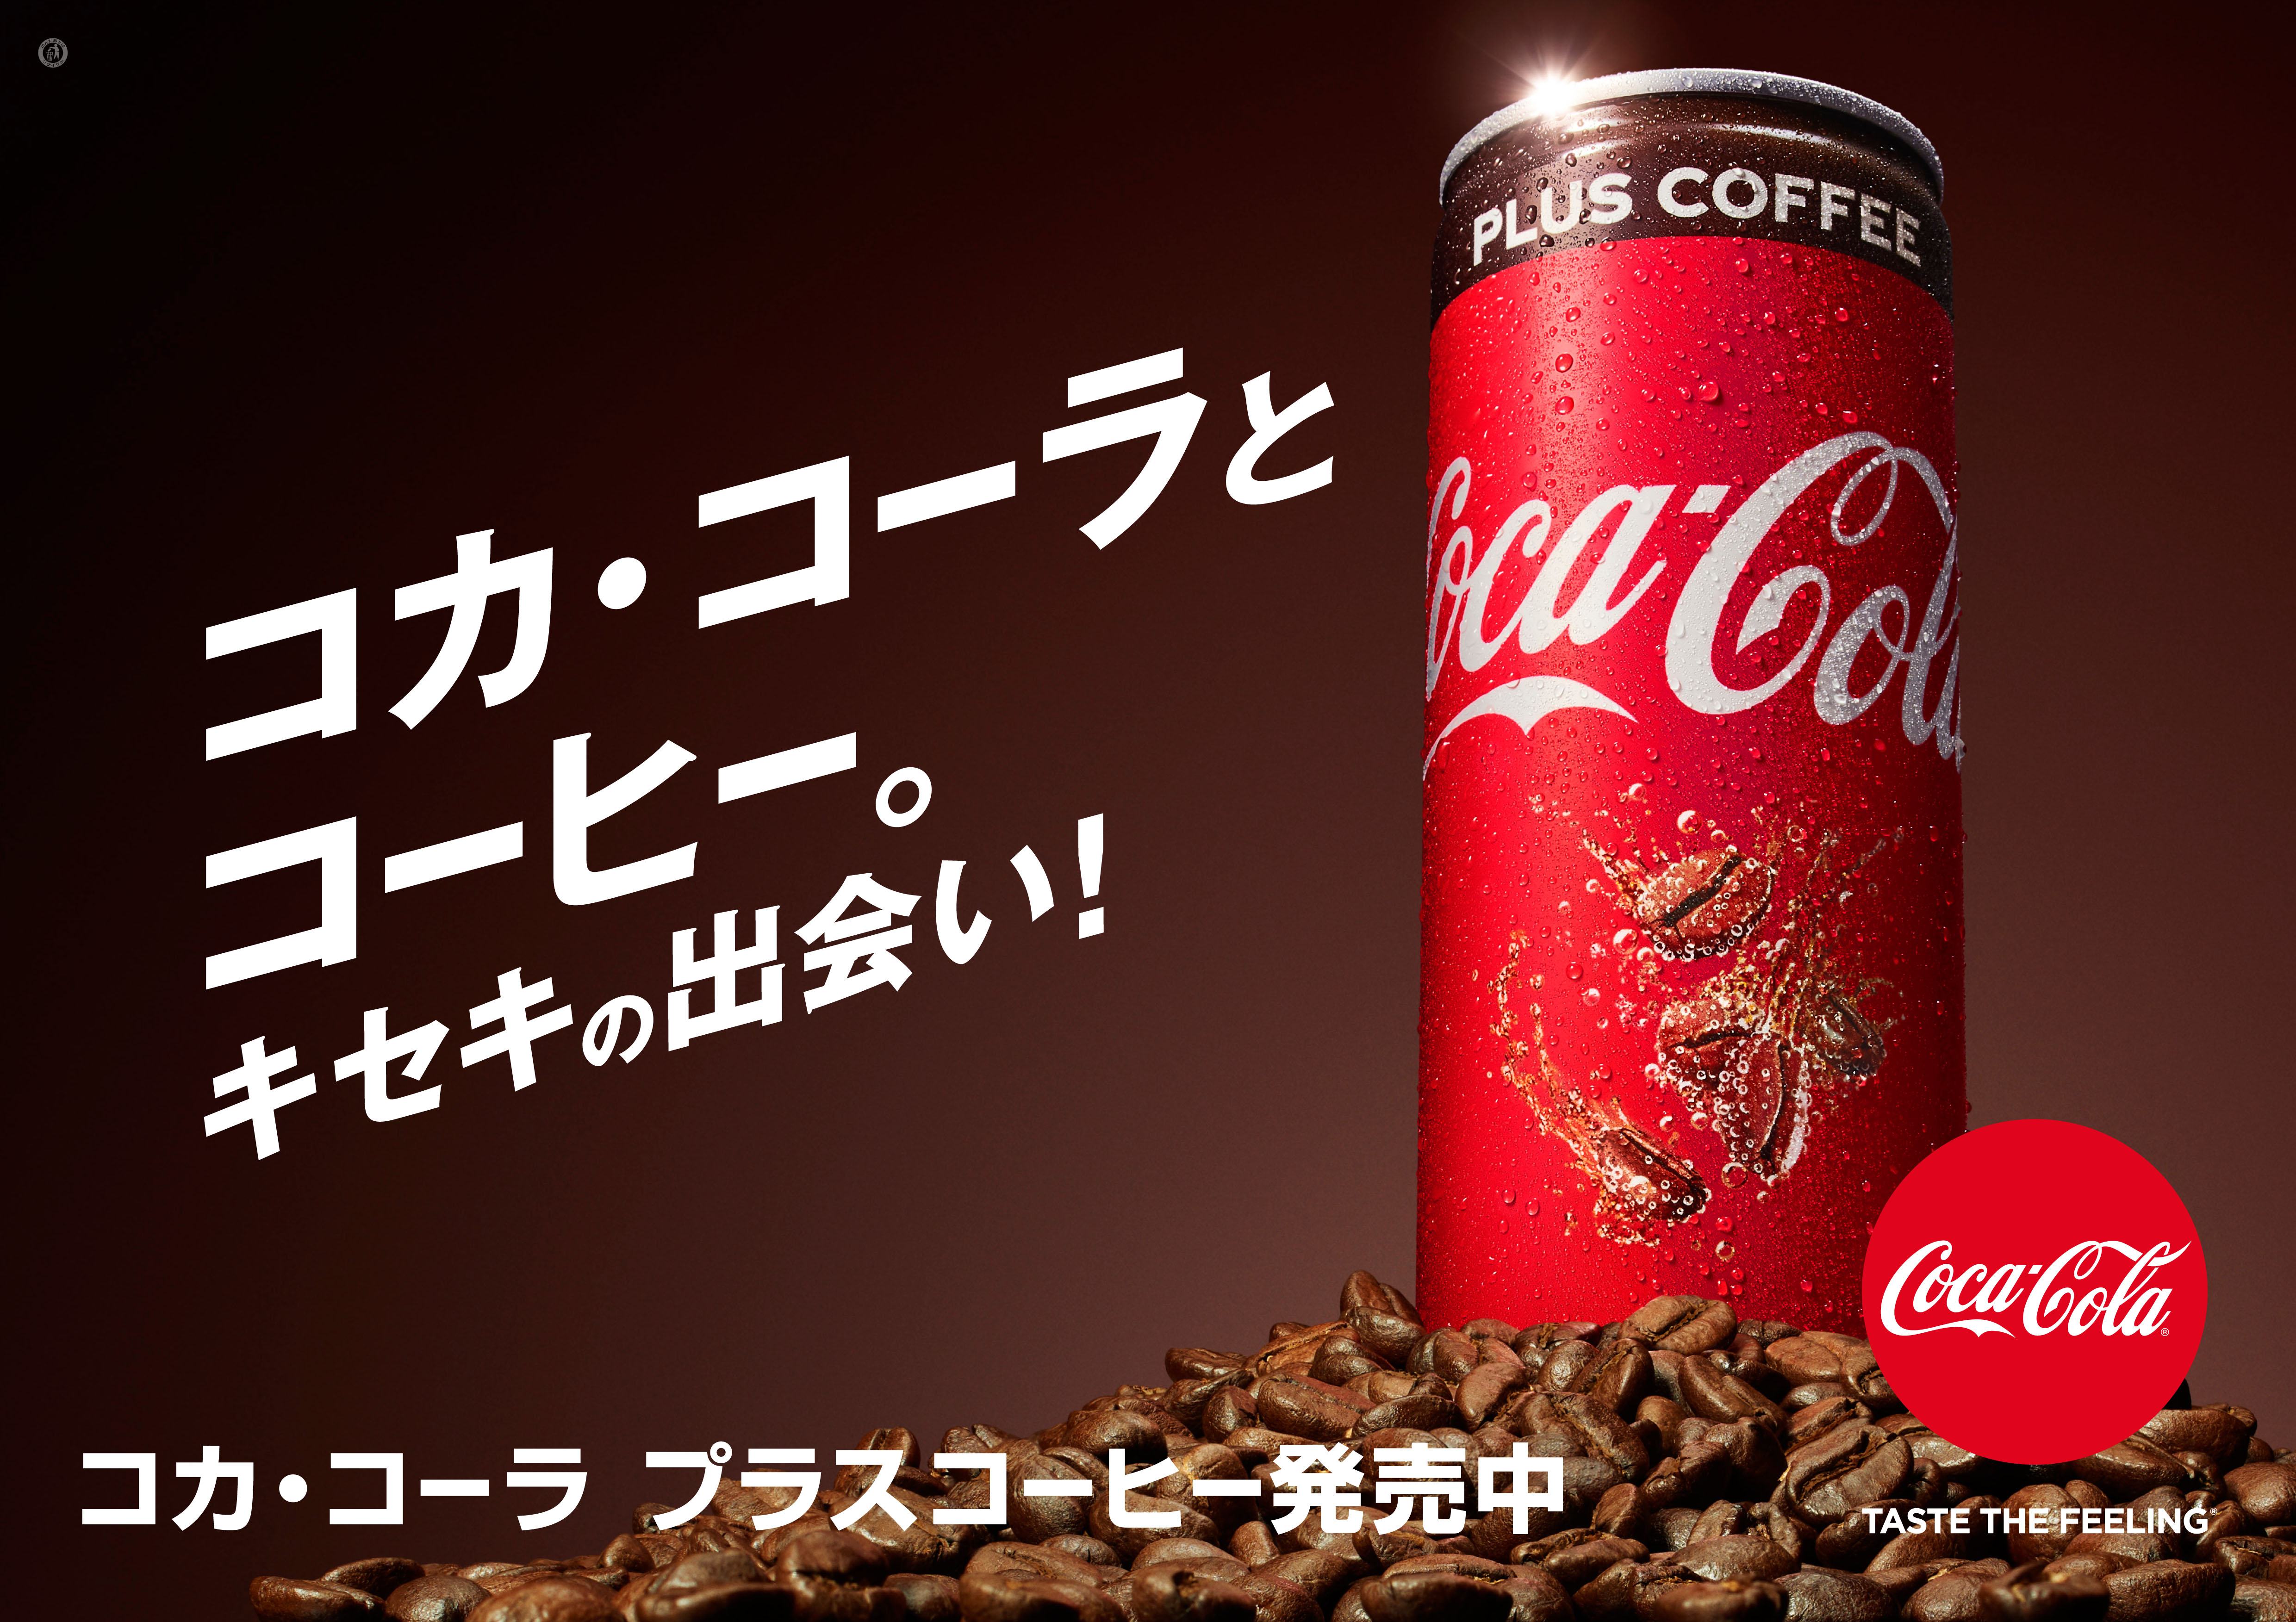 コカ コーラ ならではのおいしさと刺激にコーヒーの味わいをプラス コカ コーラ プラスコーヒー 9月17日 月 祝 発売 仕事中の休憩時に 気分をシャキッとリフレッシュ 日本コカ コーラ株式会社のプレスリリース